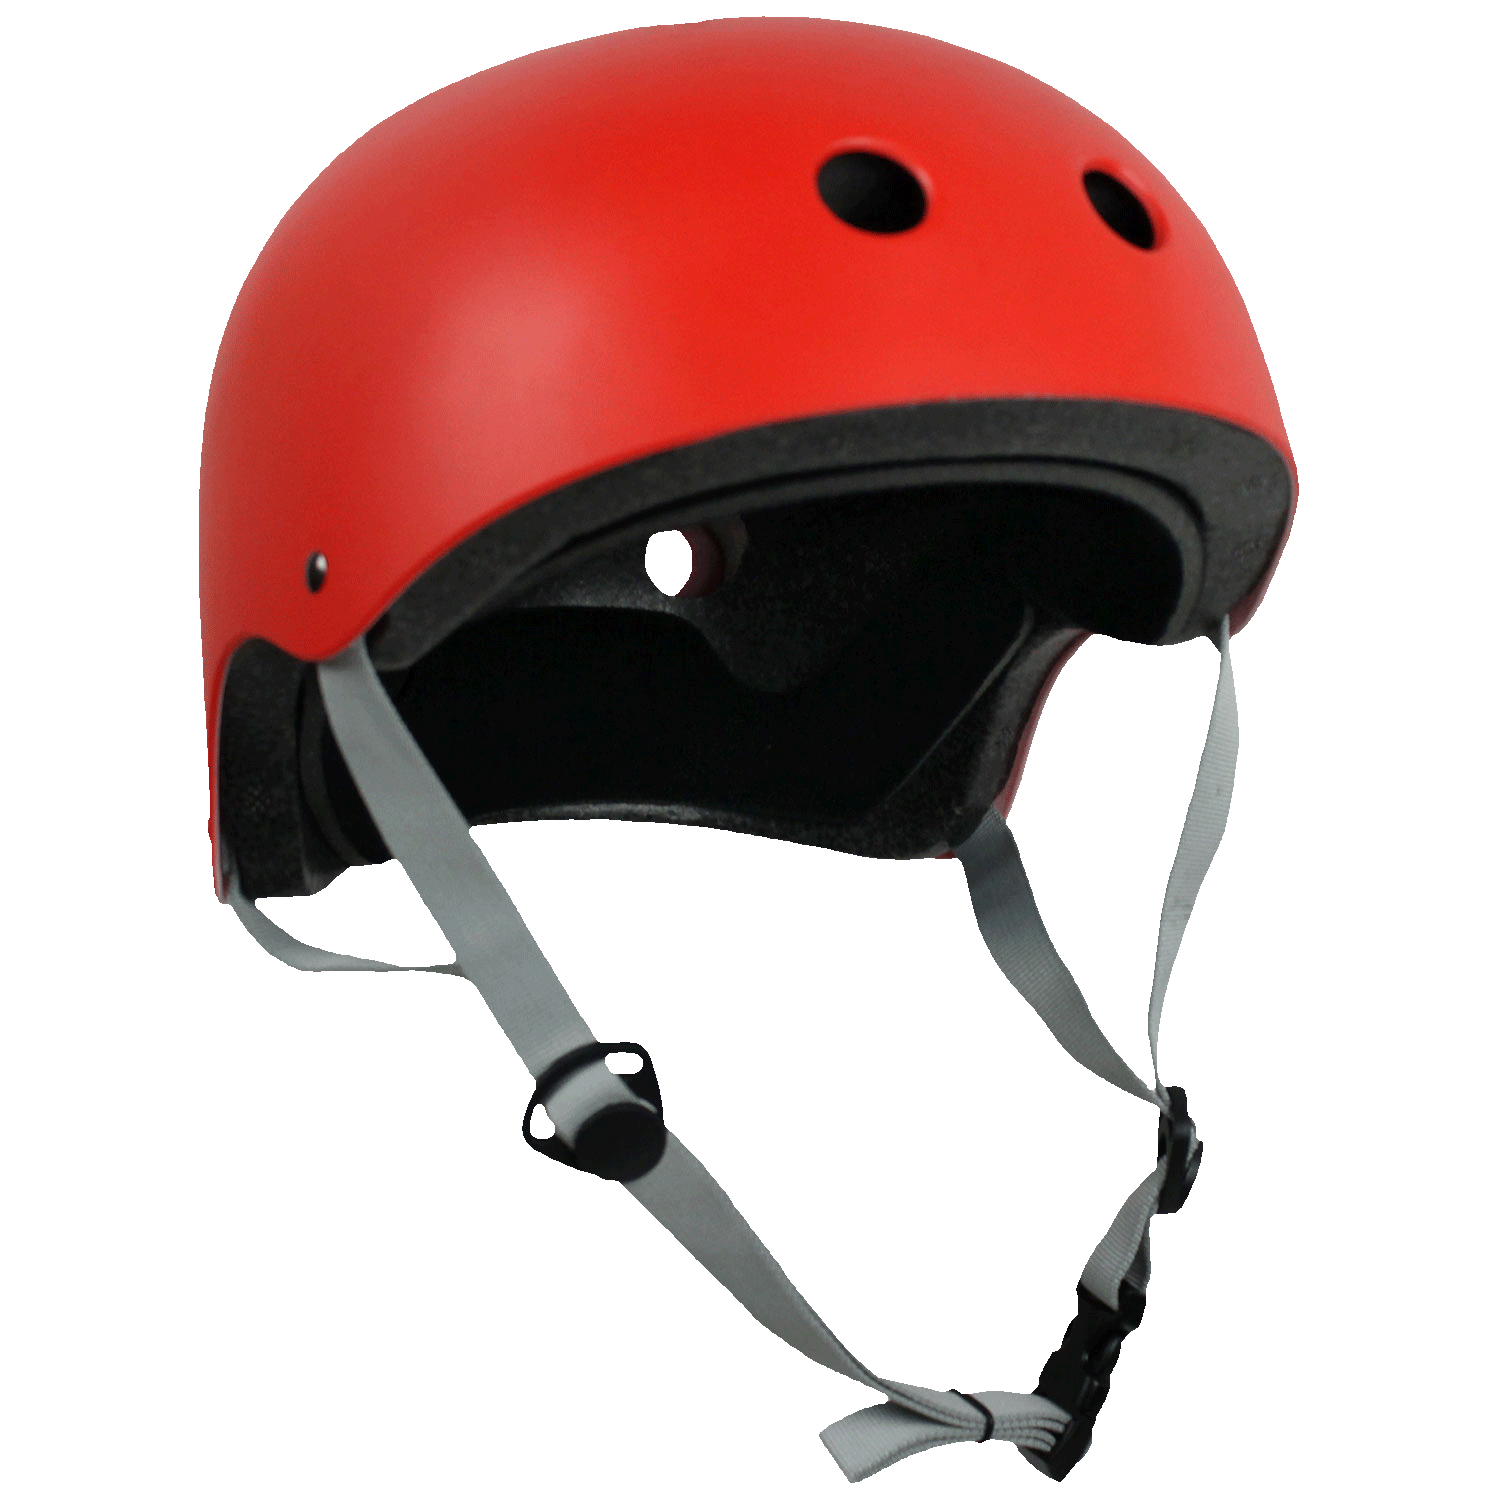 Krown Adult Skateboard Helmet Red/Gray OSFA